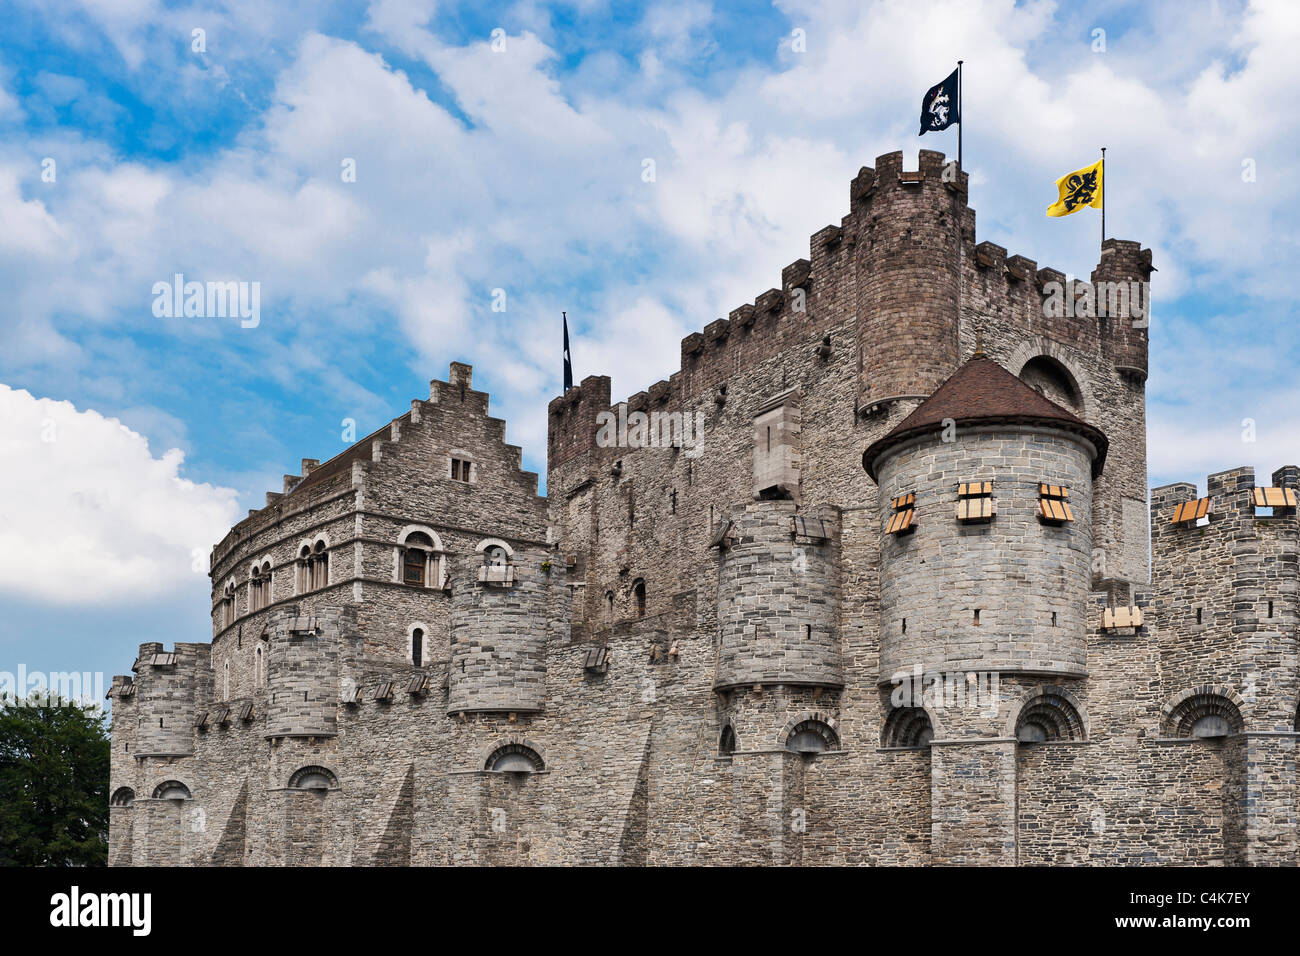 Burg Gravensteen, Gent, Belgien | Gravensteen Castle, Ghent, Belgium Stock Photo